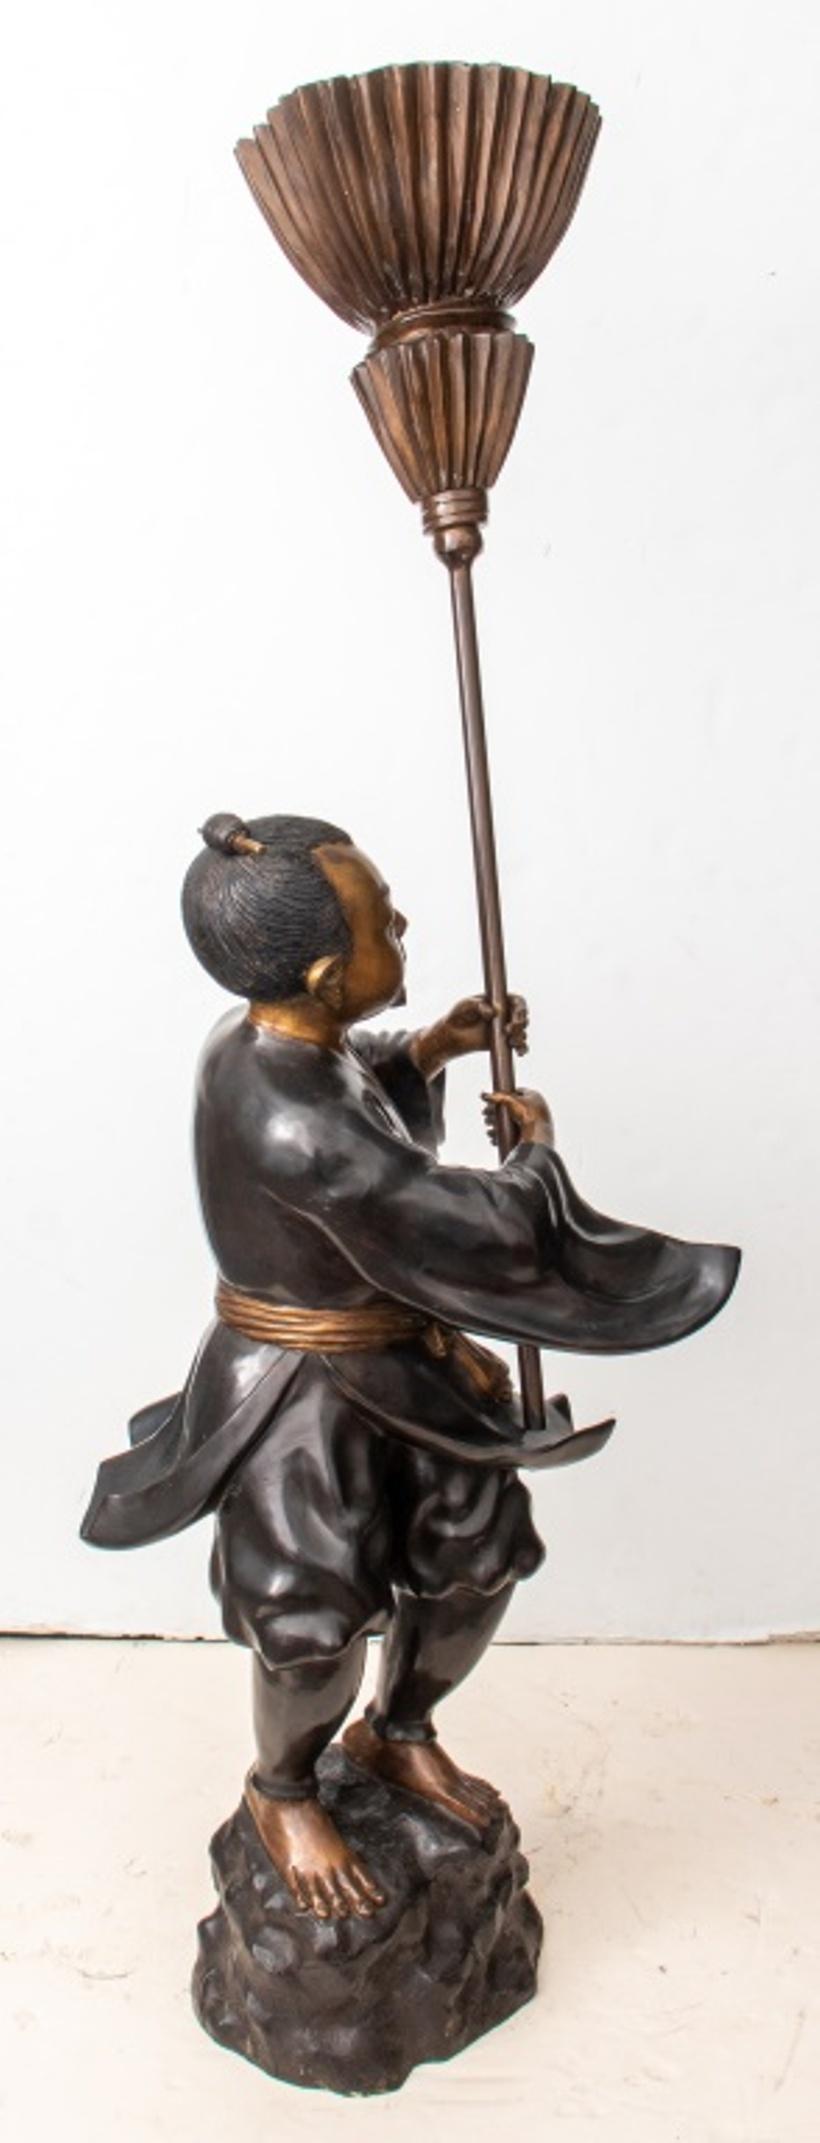 Große japanische Bronzeskulptur in zwei Teilen, die einen Diener darstellt, der auf einem felsigen Sockel steht und einen Chamara-Fliegenwedel oder -Schwamm hält, der verwendet wird, um Unwissenheit zu vertreiben und Gottheiten zu fächern. Gesicht,